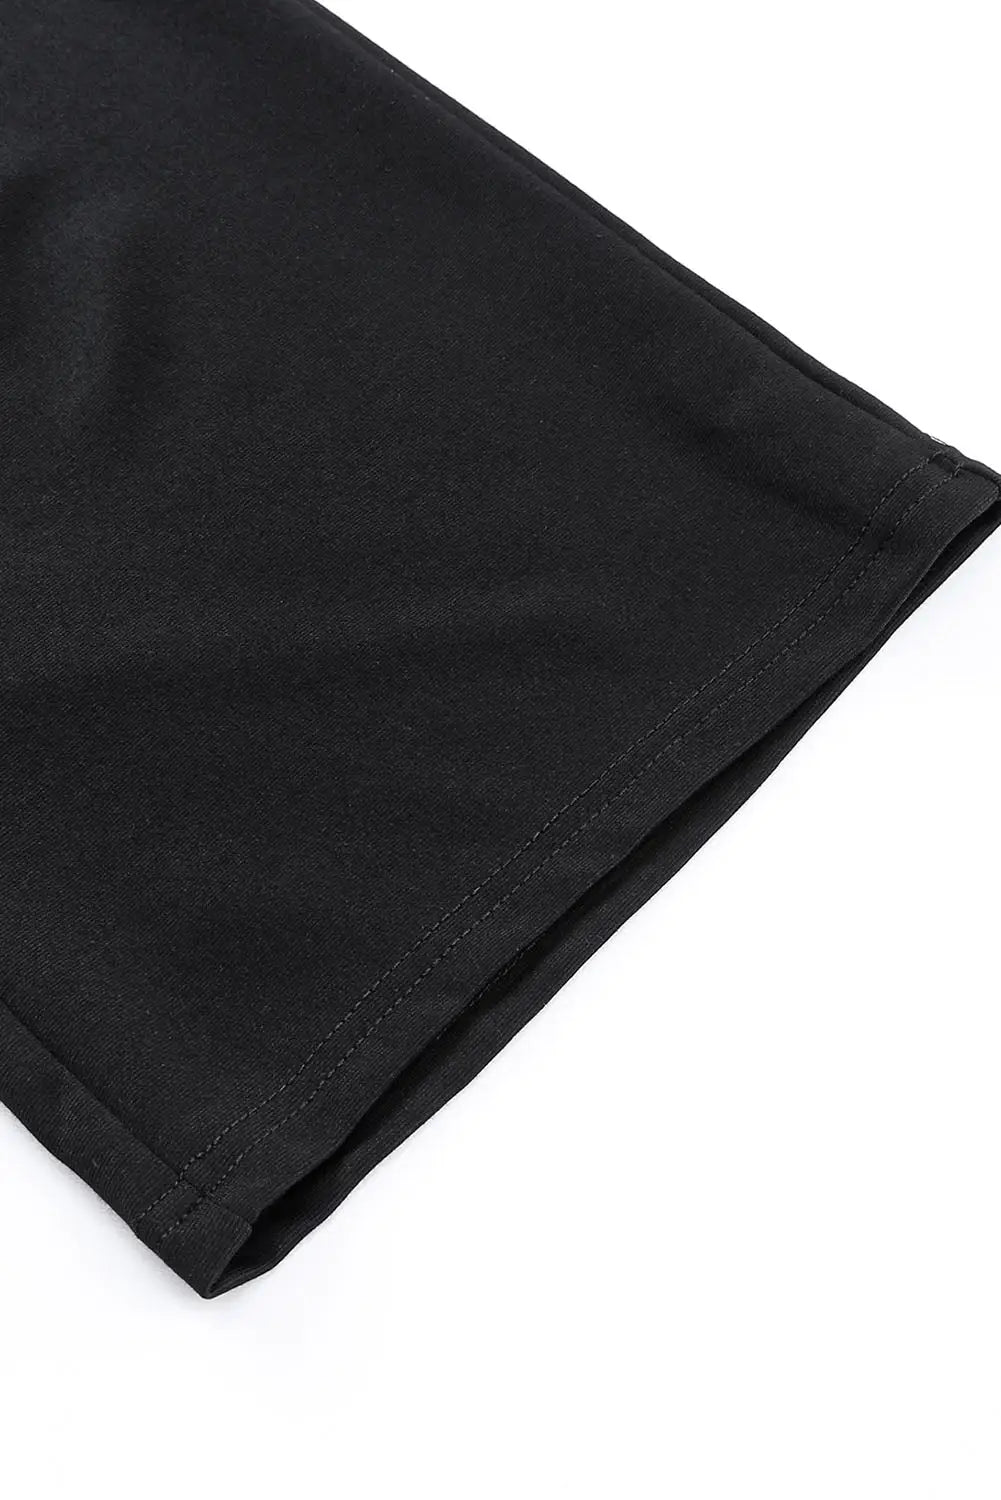 Black pocketed adjustable spaghetti strap straight leg jumpsuit - jumpsuits & rompers